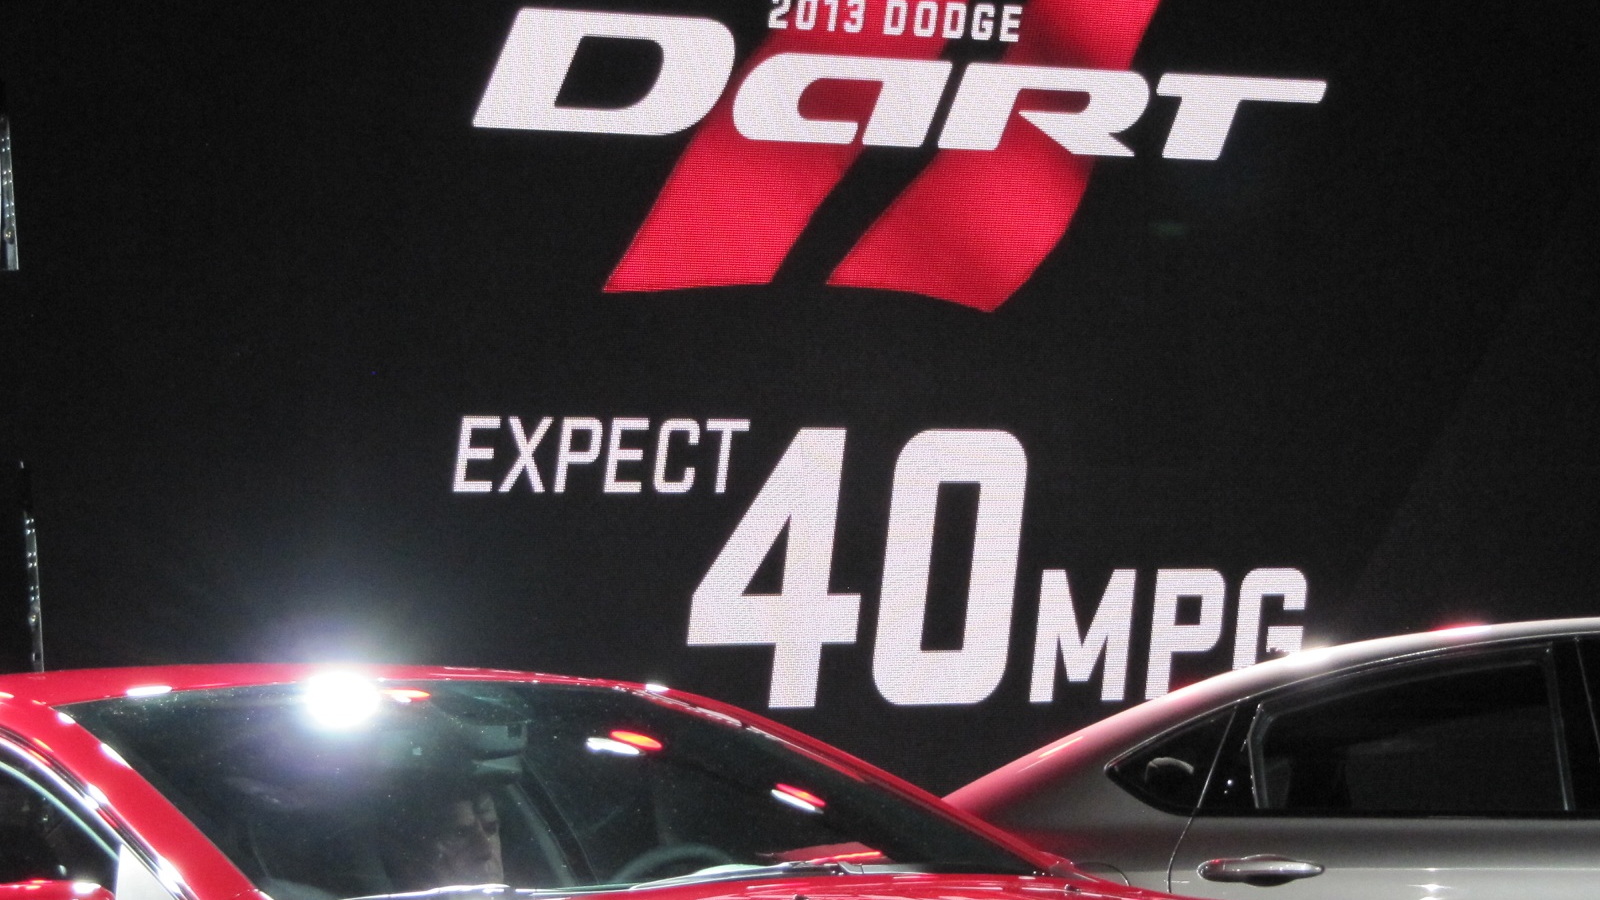 2013 Dodge Dart launch at Detroit Auto Show, Jan 2012